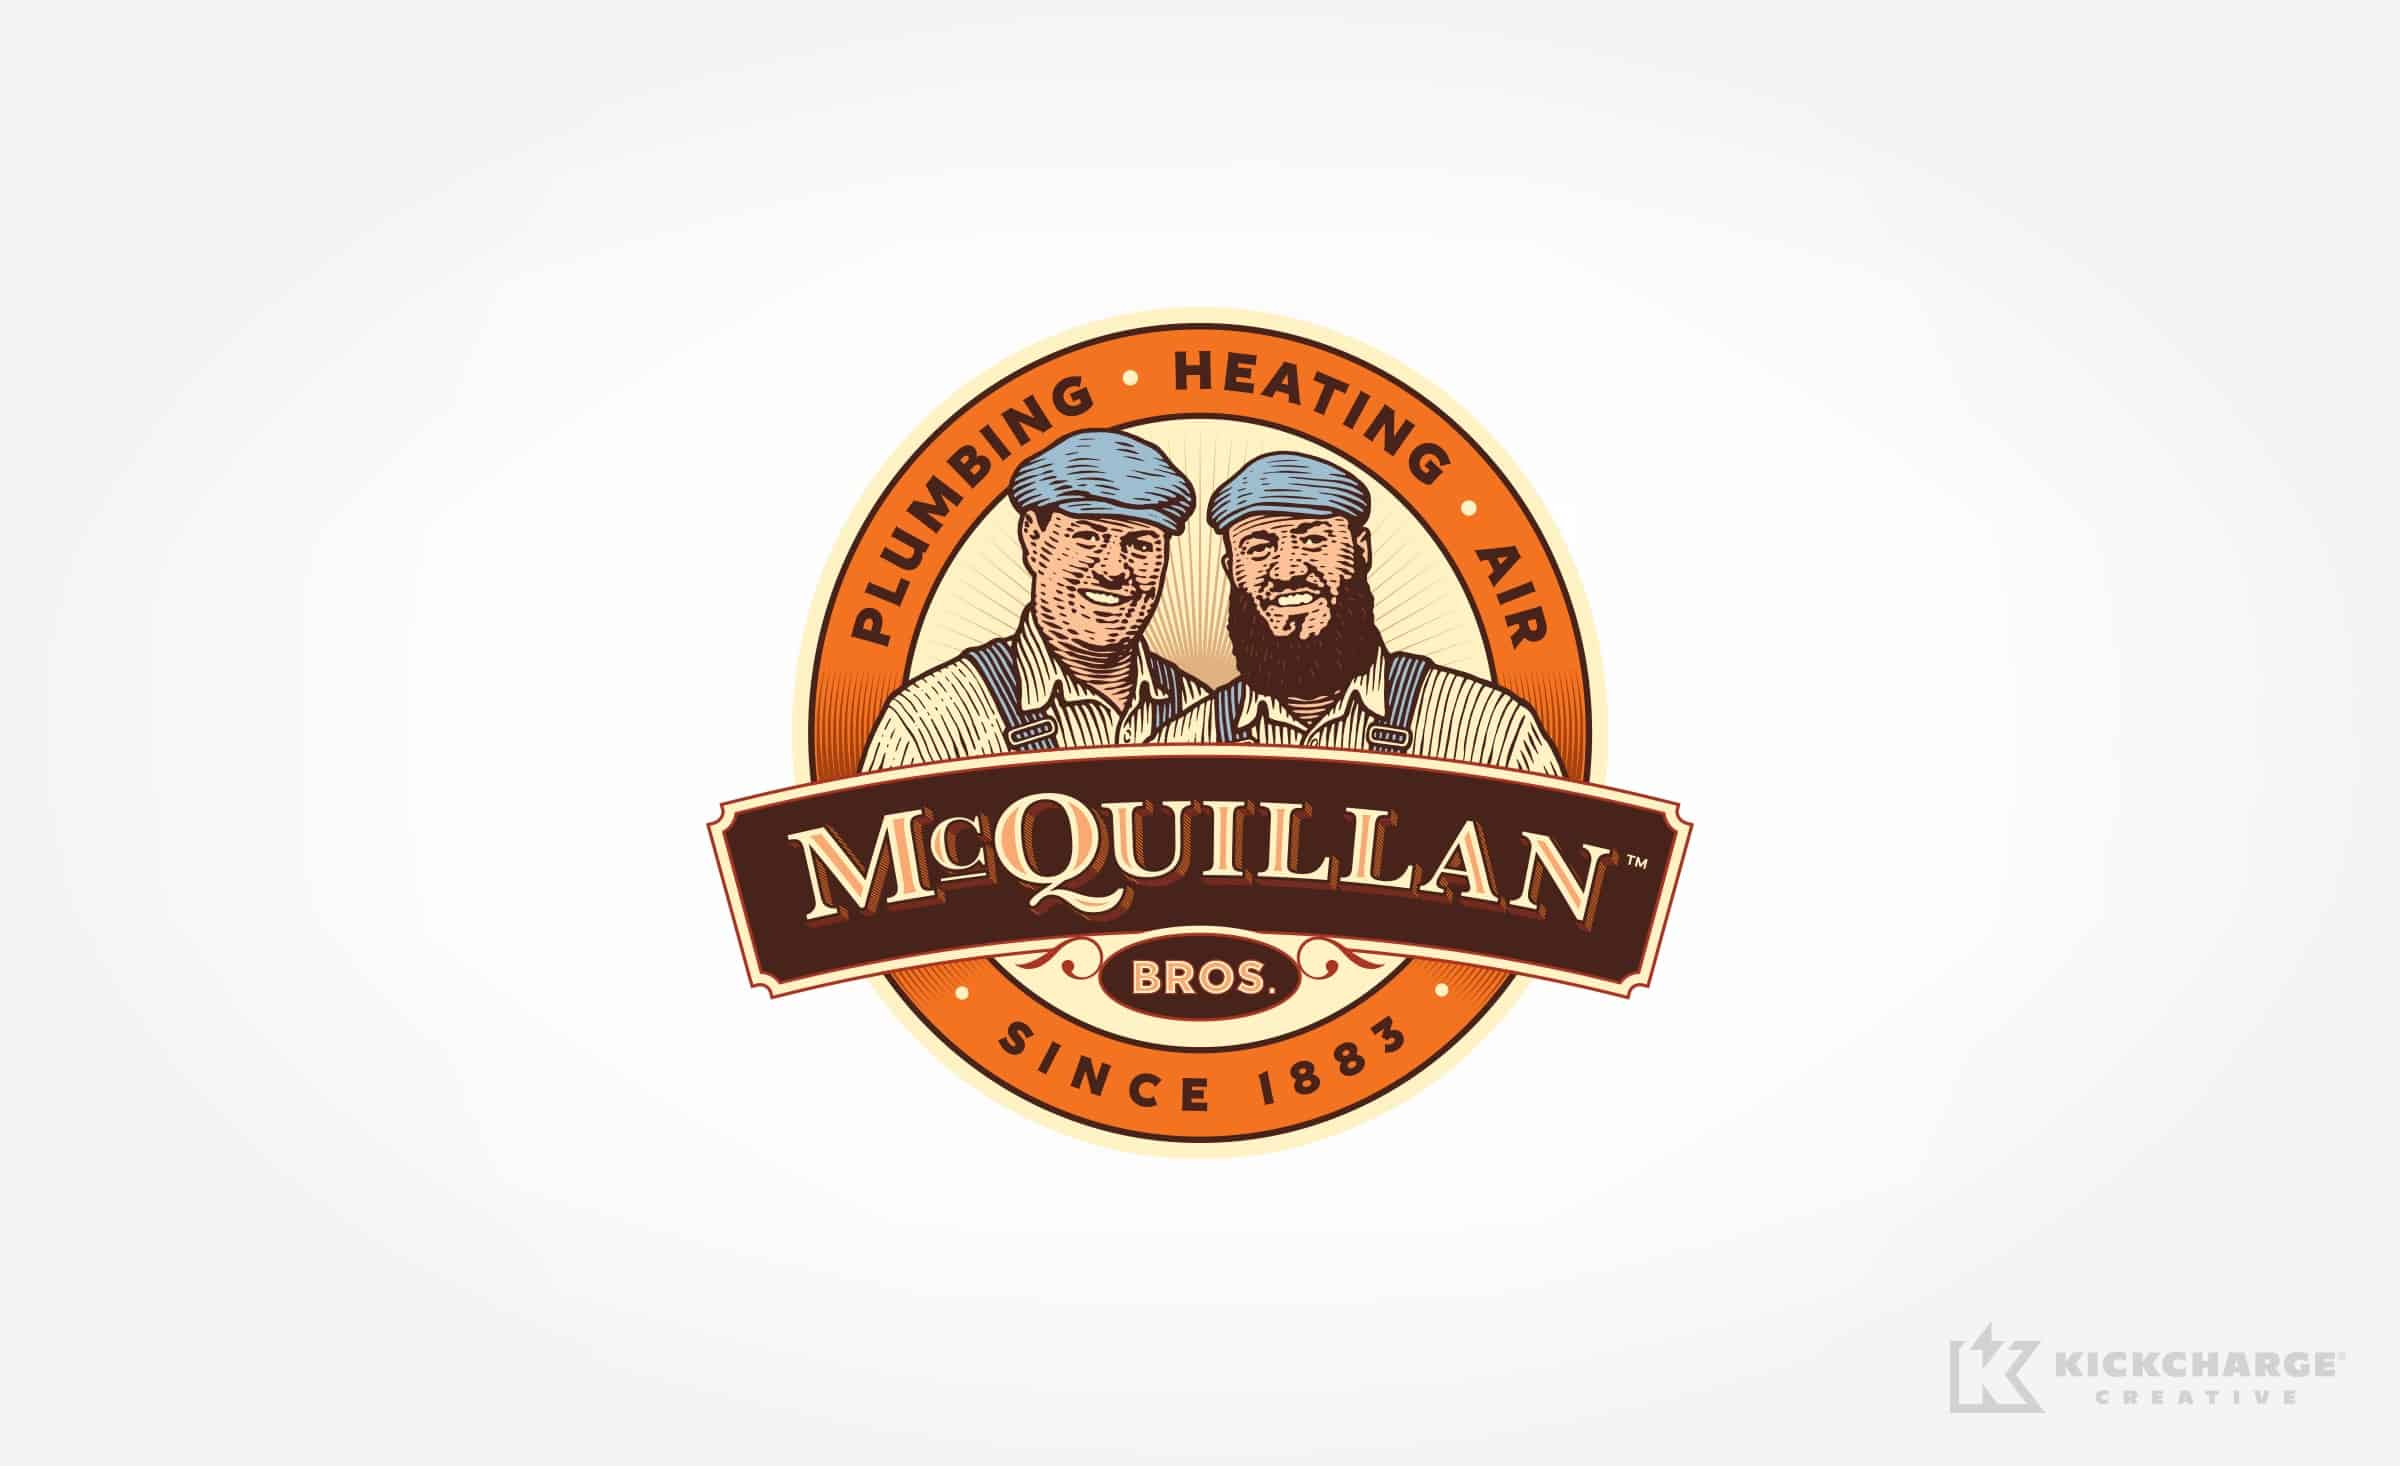 plumbing and hvac logo for McQuillan Bros